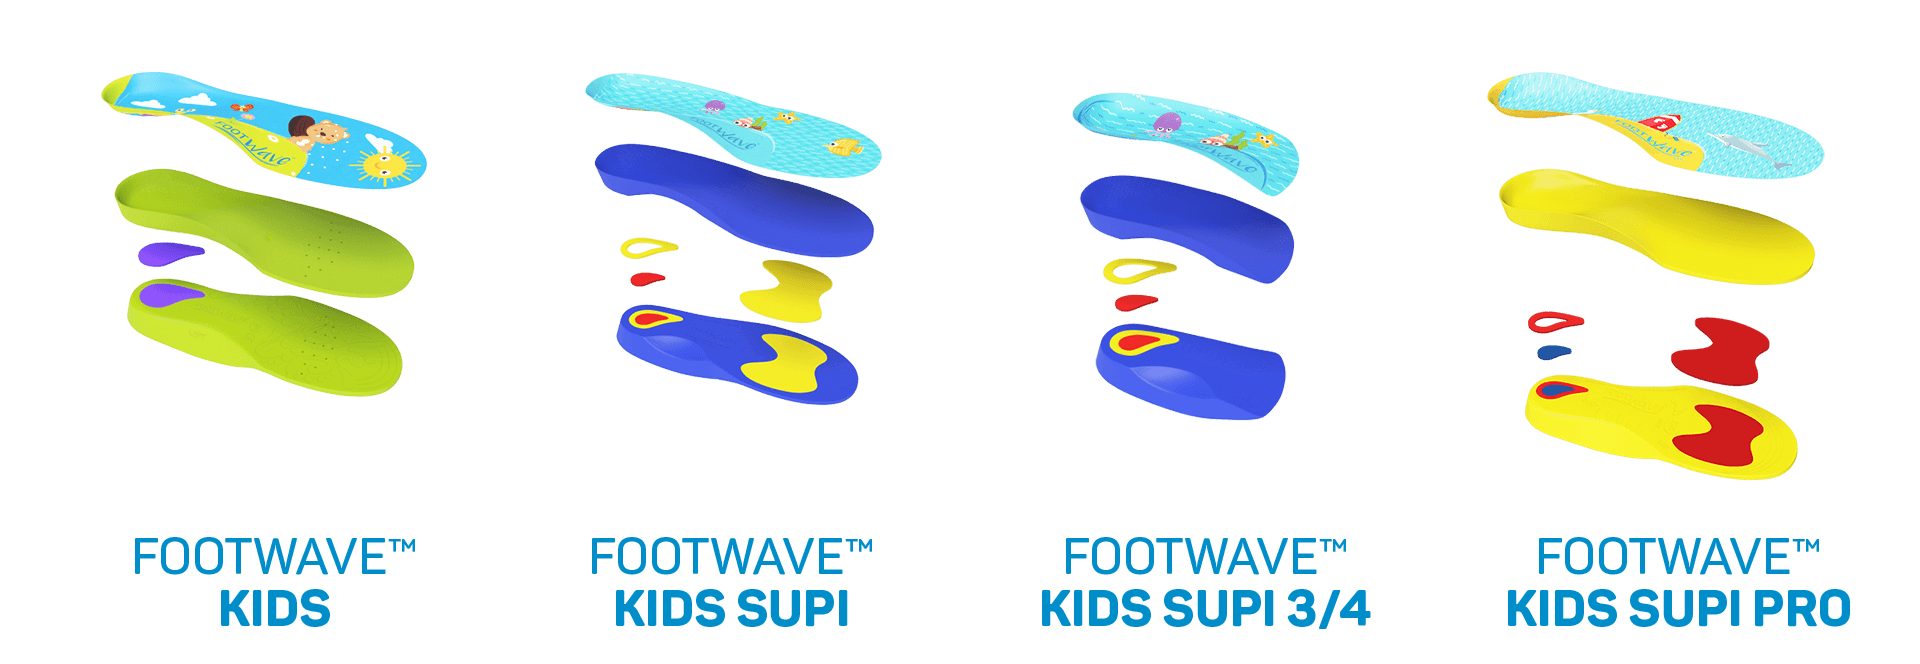 Wkładki ortopedyczne dla dzieci w każdym wieku - FootWave różne modele